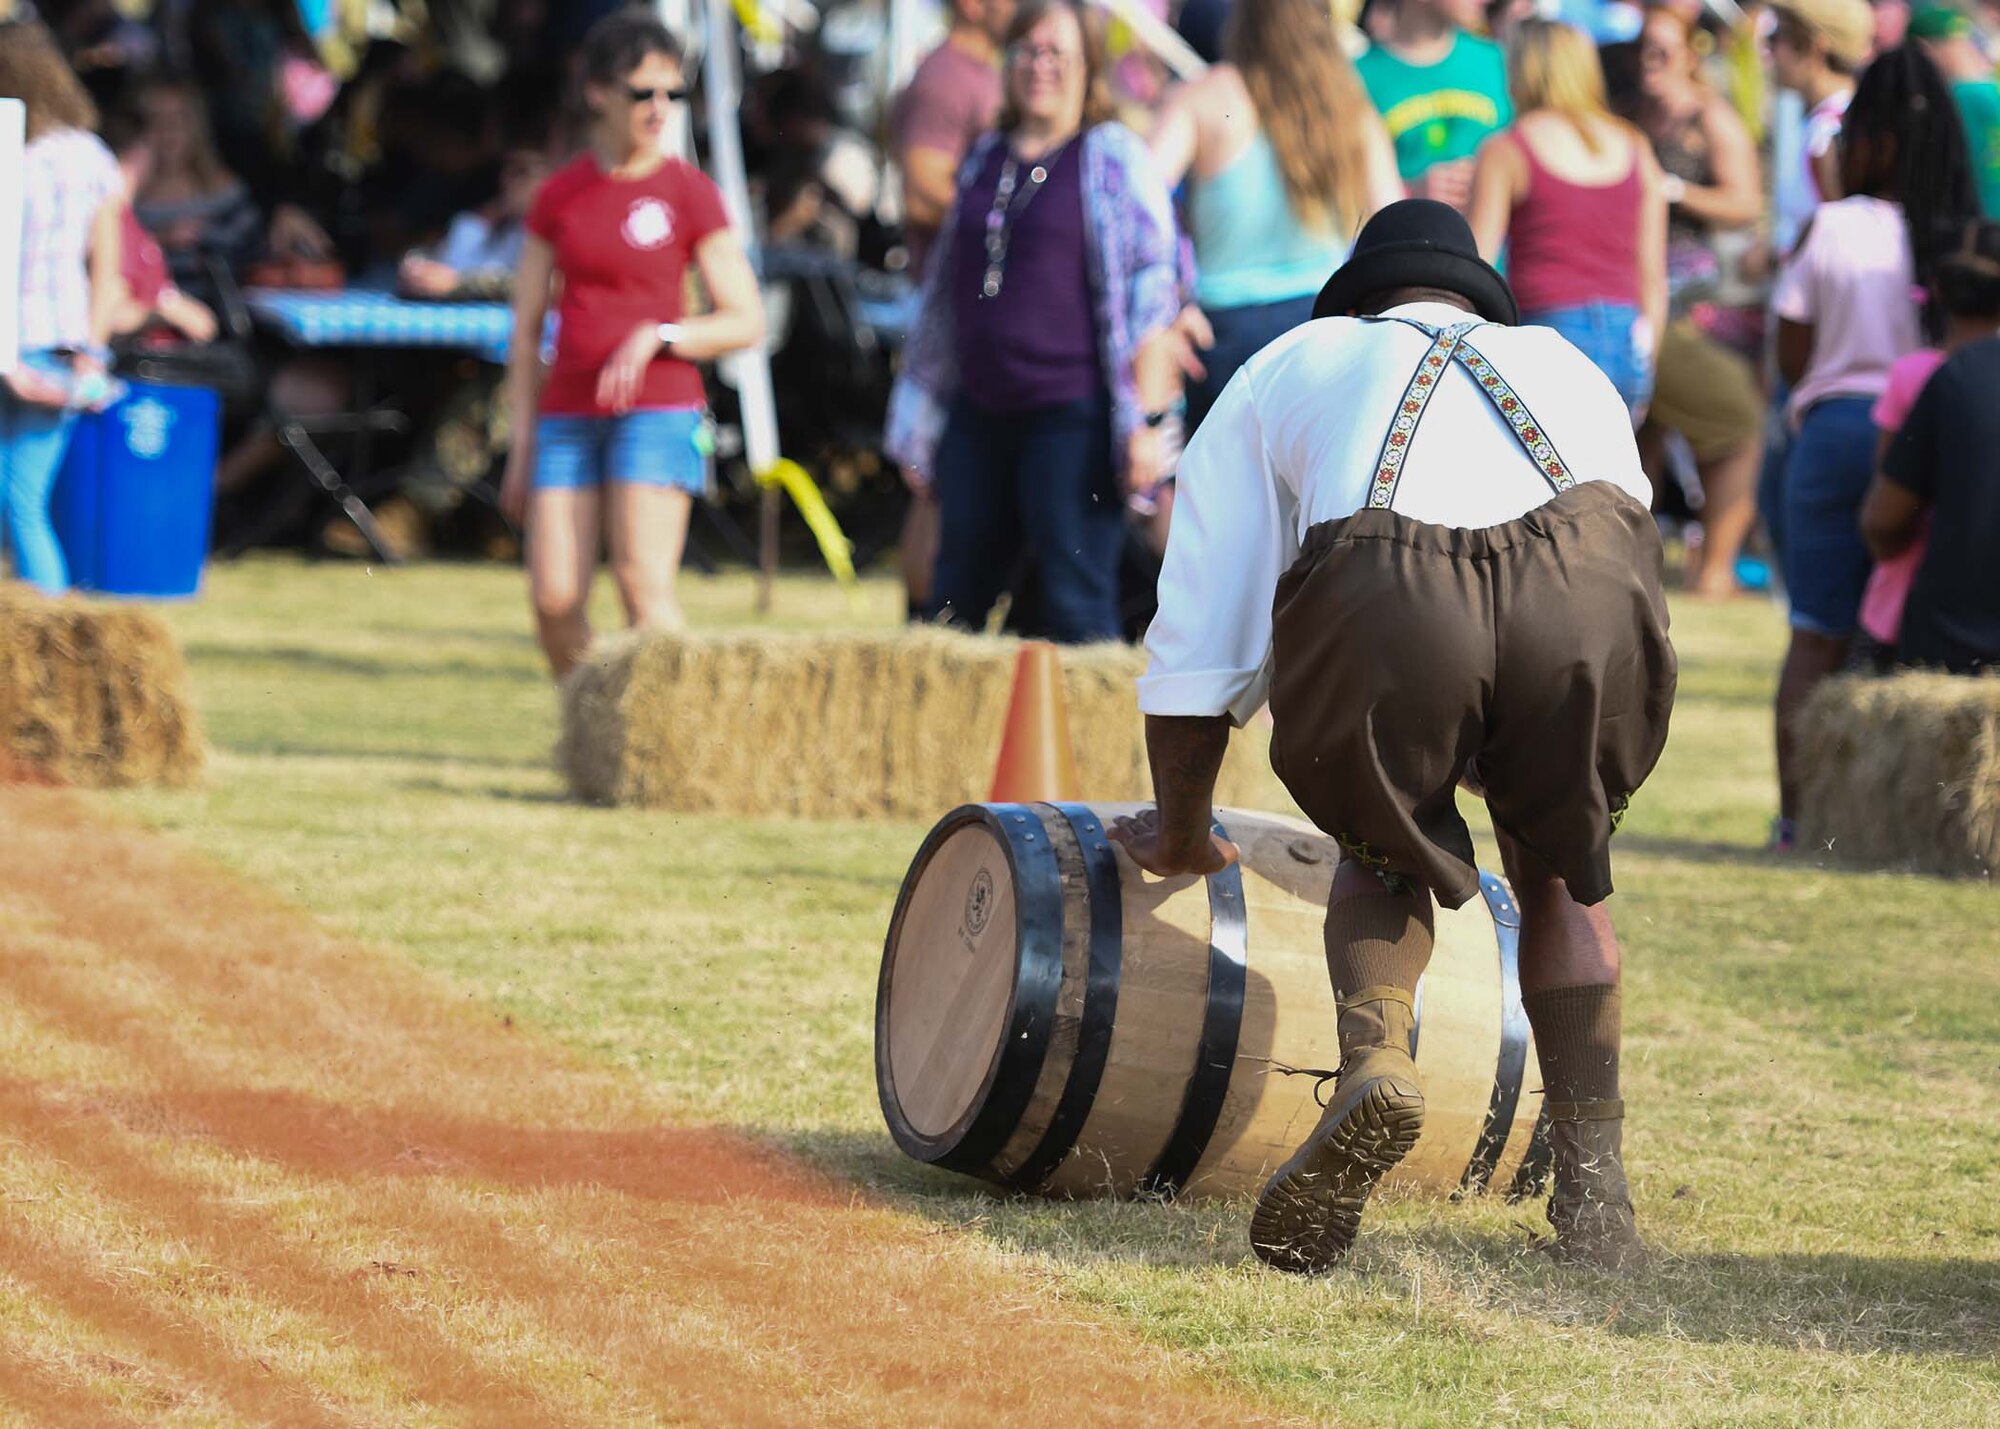 A guy rolls a barrel across the grass during Oktoberfest